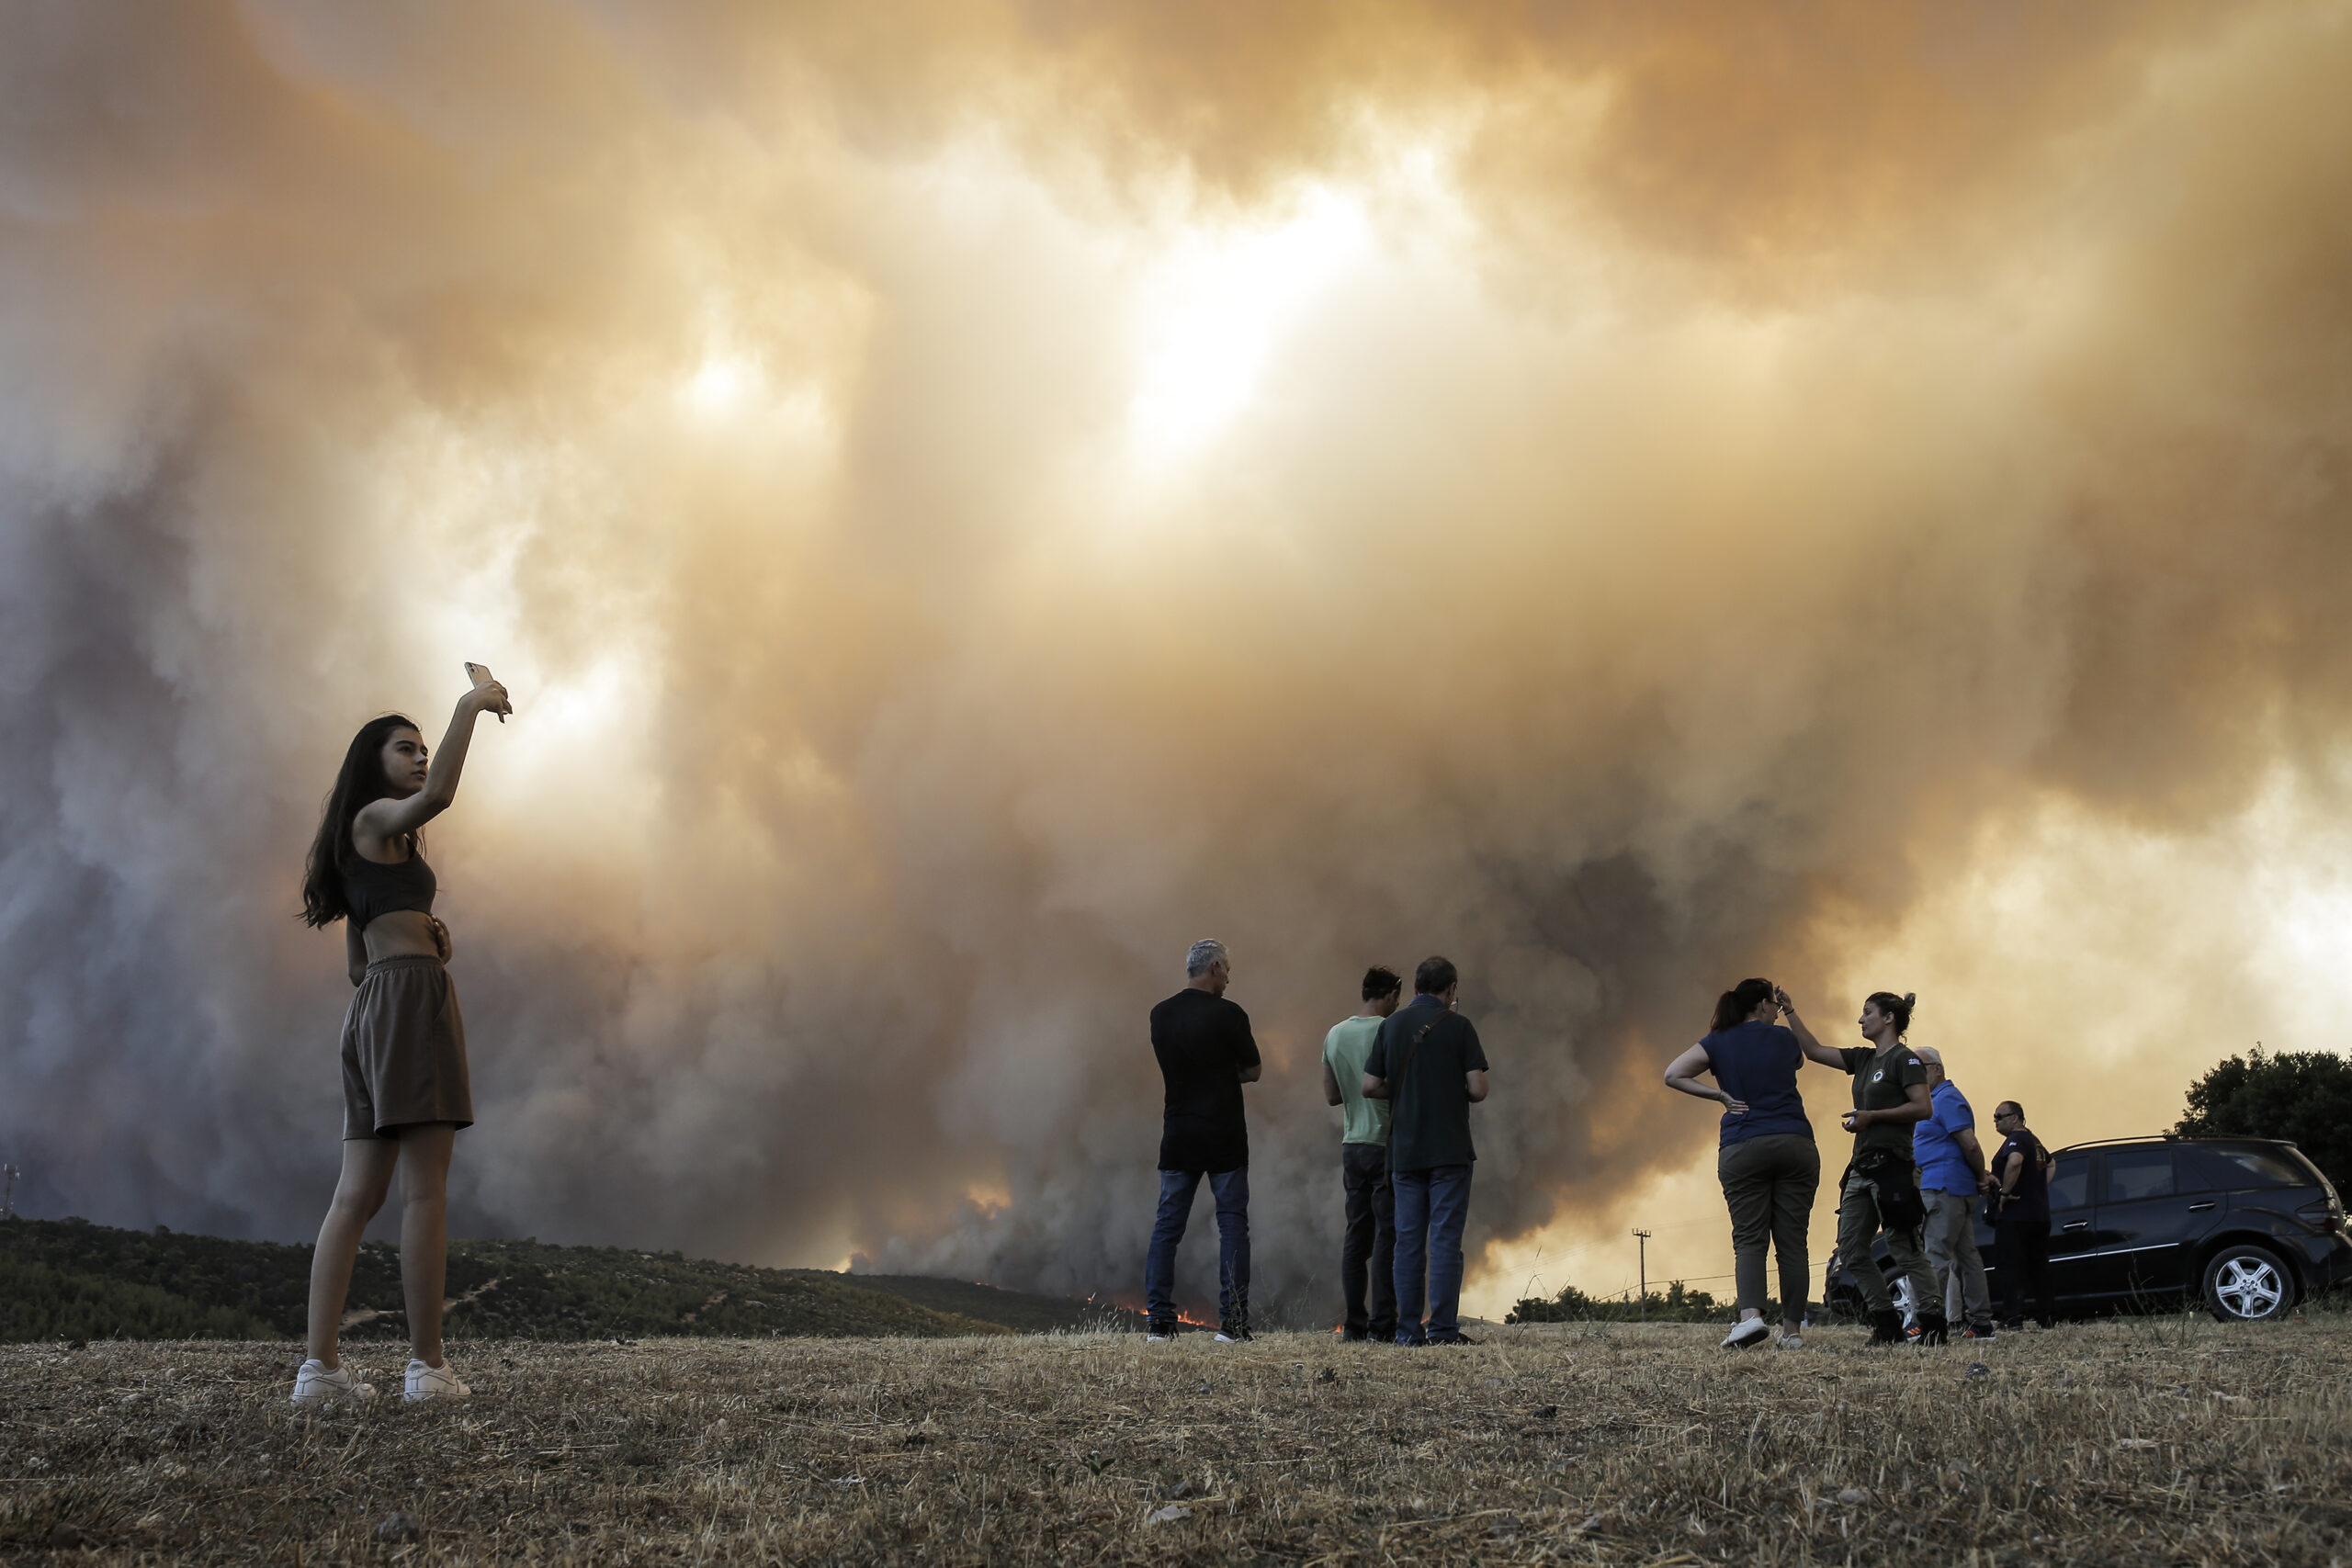 Δήμαρχος Μάνδρας: Η φωτιά από τα Δερβενοχώρια τώρα απειλεί τη Μάνδρα και οικισμούς της - Έχουν κυκλώσει τον οικισμό Νέα Ζωή Μάνδρας οι φλόγες